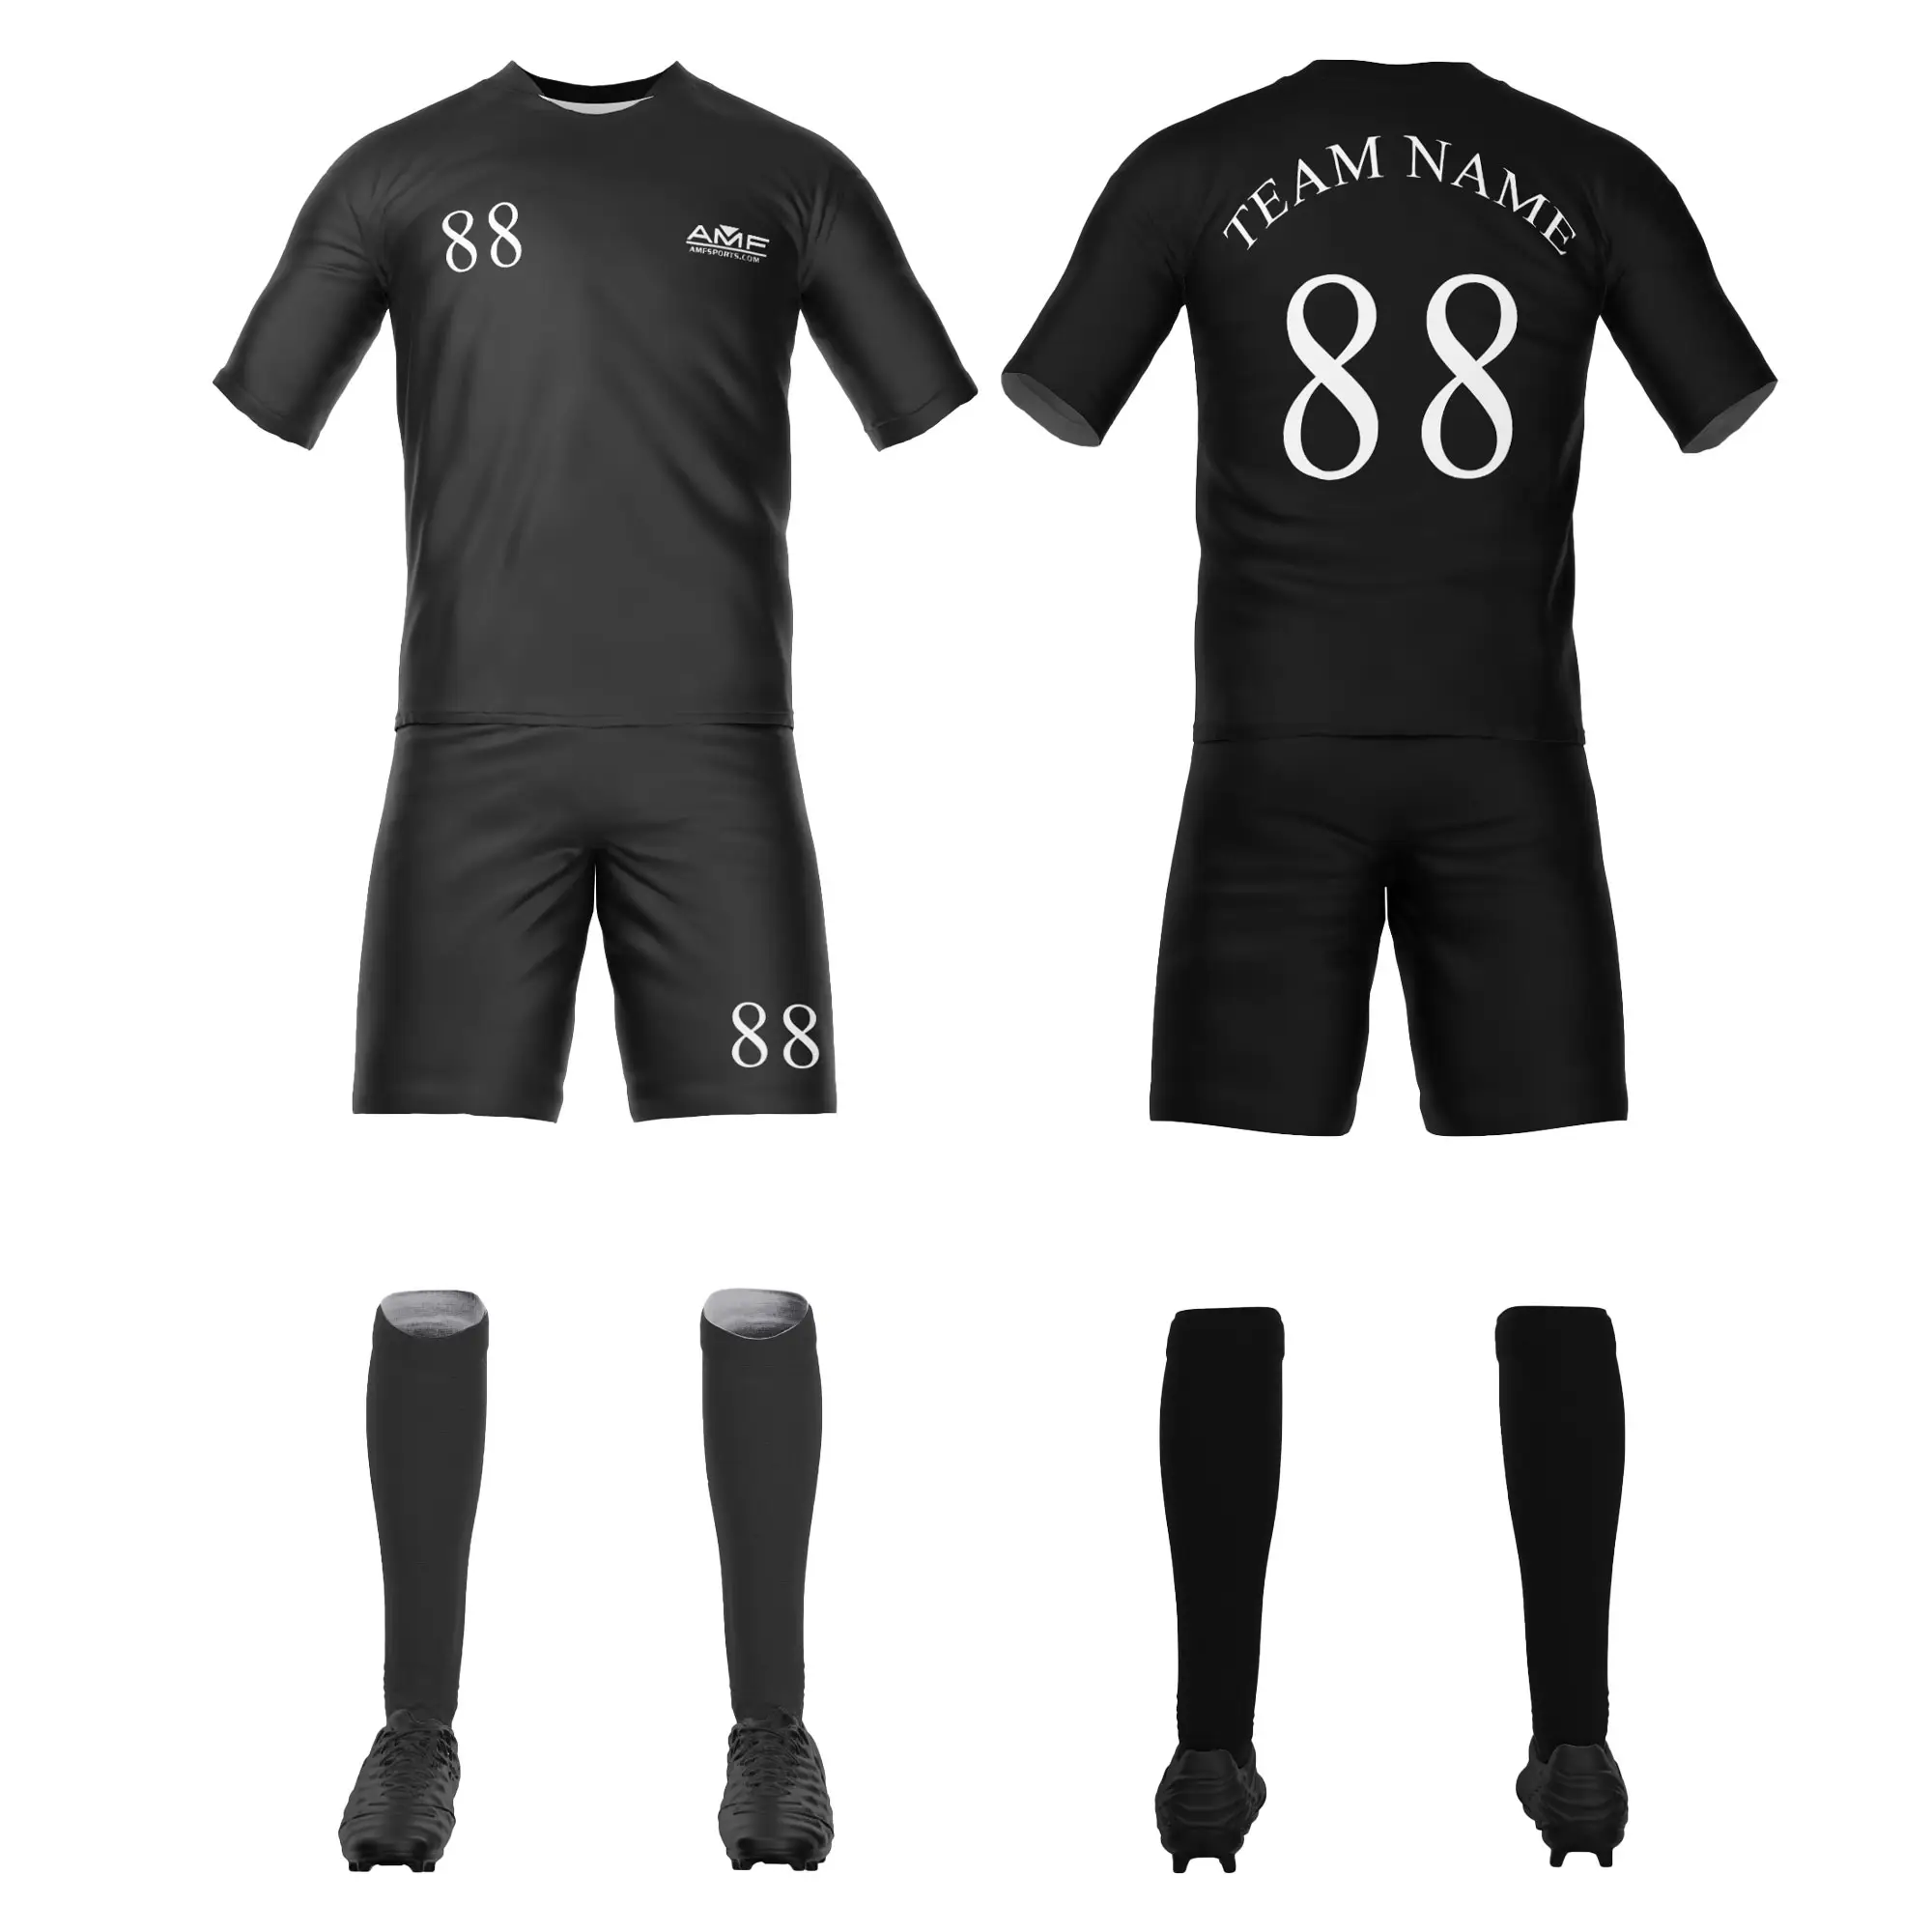 Uniforme de futebol personalizado sublimado por atacado, camisa personalizada de camisa de futebol de clube personalizada, camisas de futebol para homens, mulheres e meninos